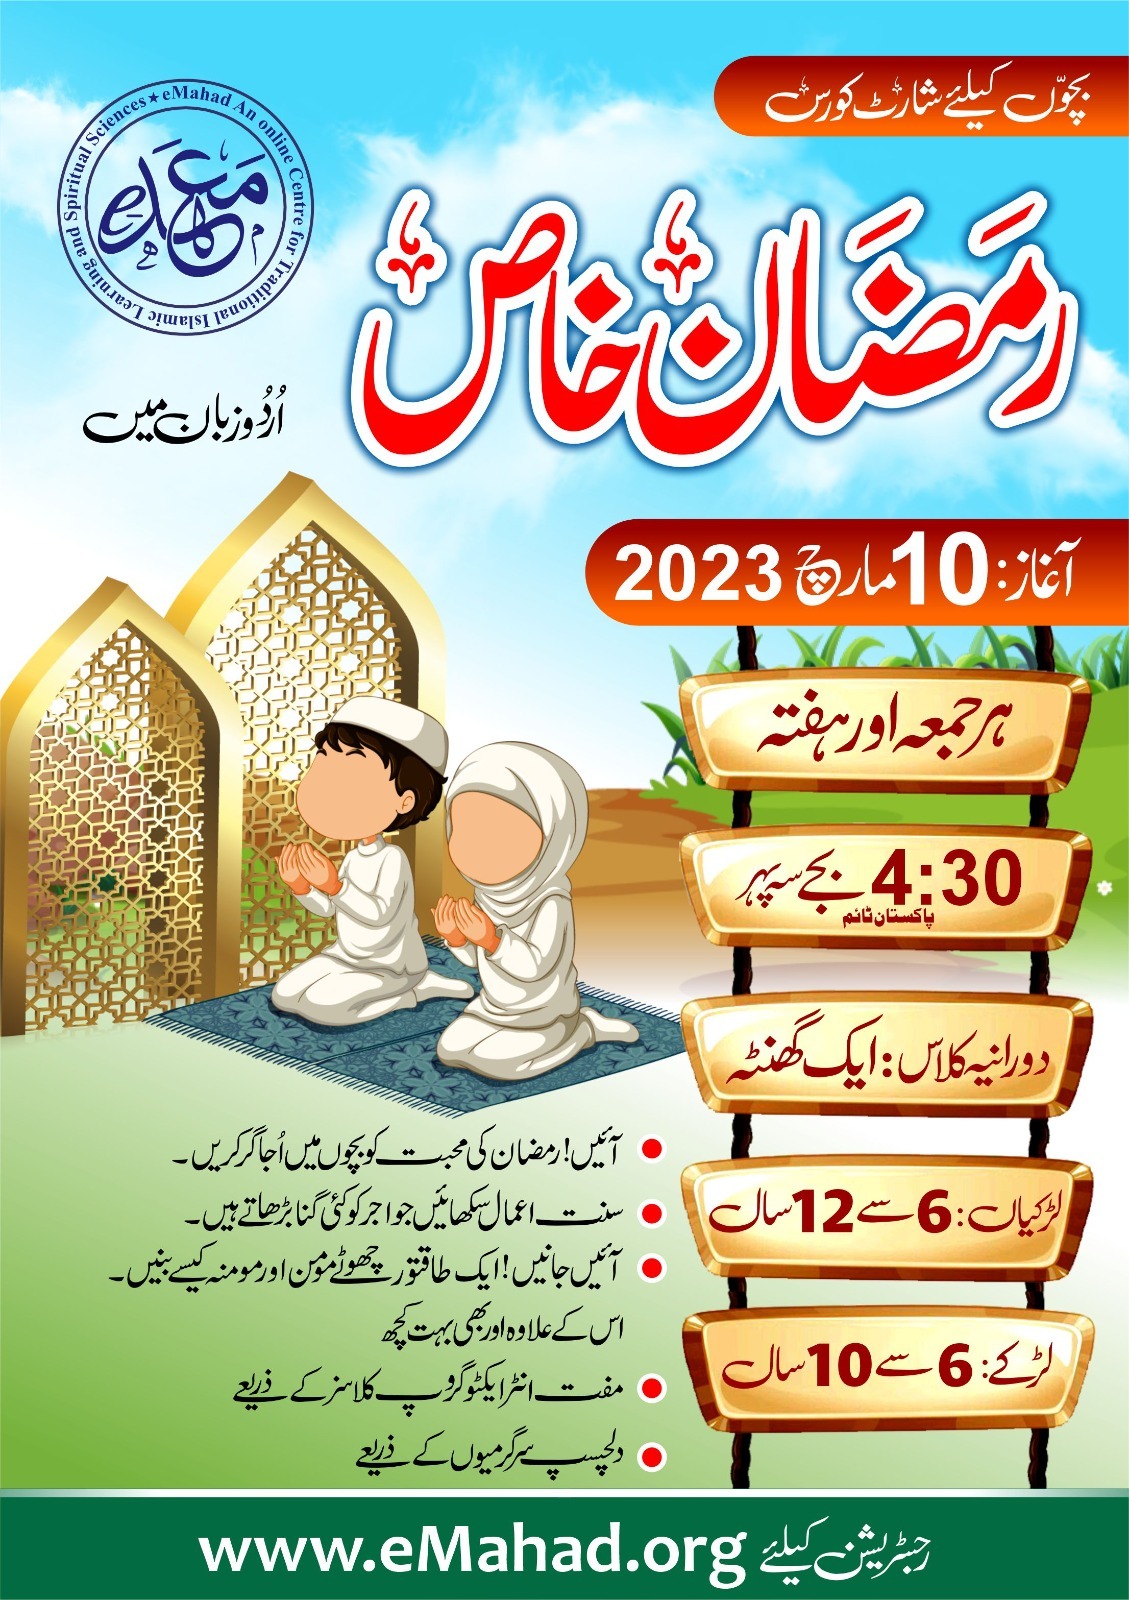 Ramadan Special For Kids  (In Urdu) 2023 |  Free Online Short Course